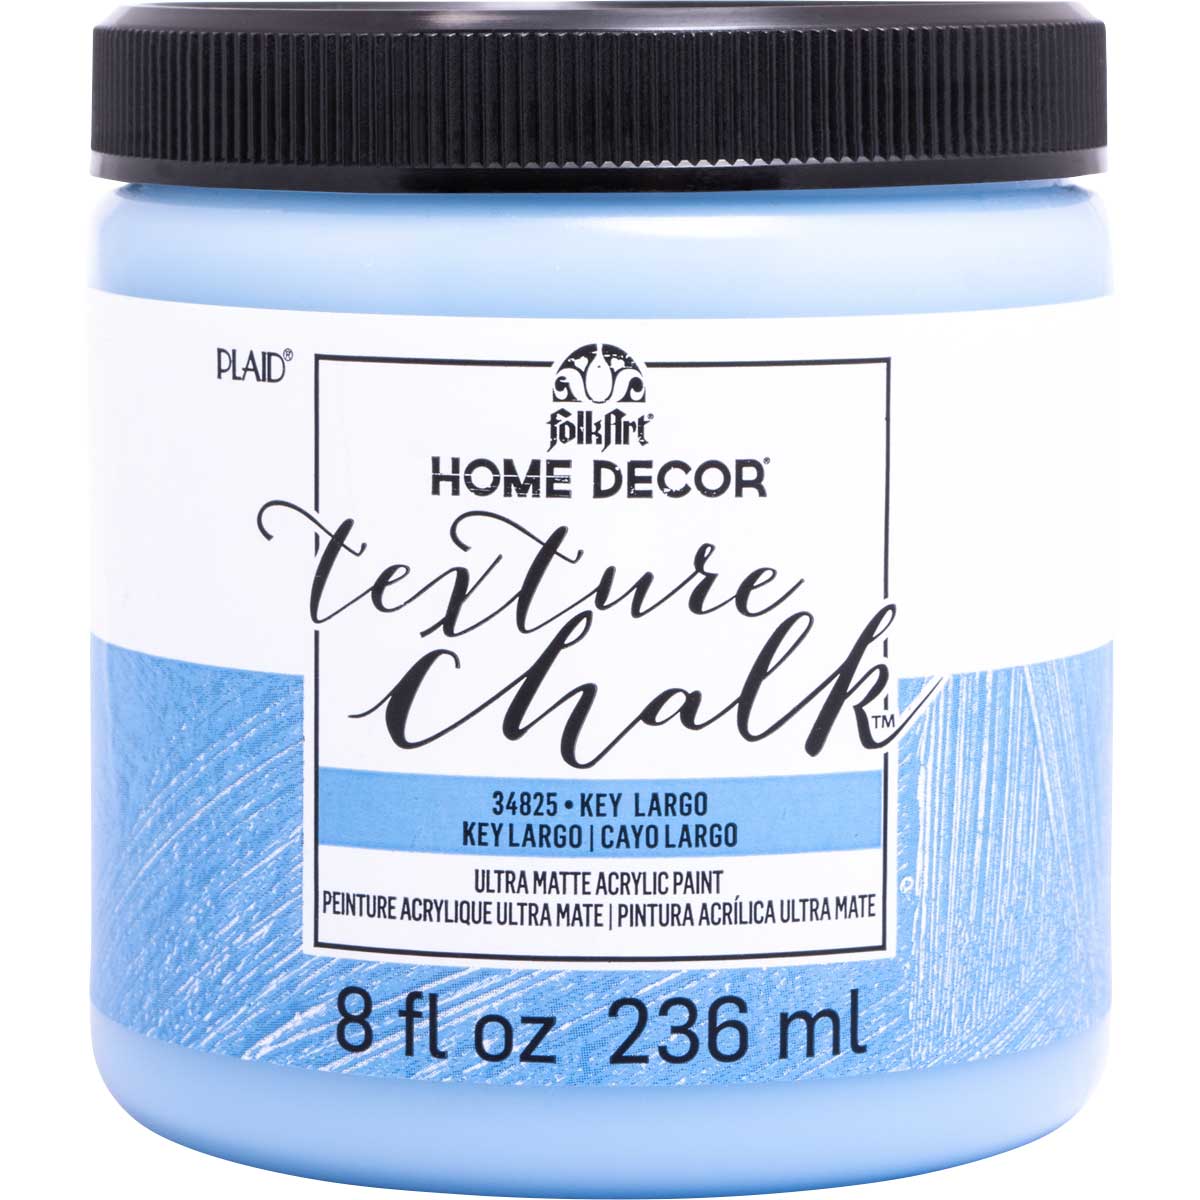 FolkArt ® Home Decor ® Texture Chalk™ - Key Largo, 8 oz. - 34825